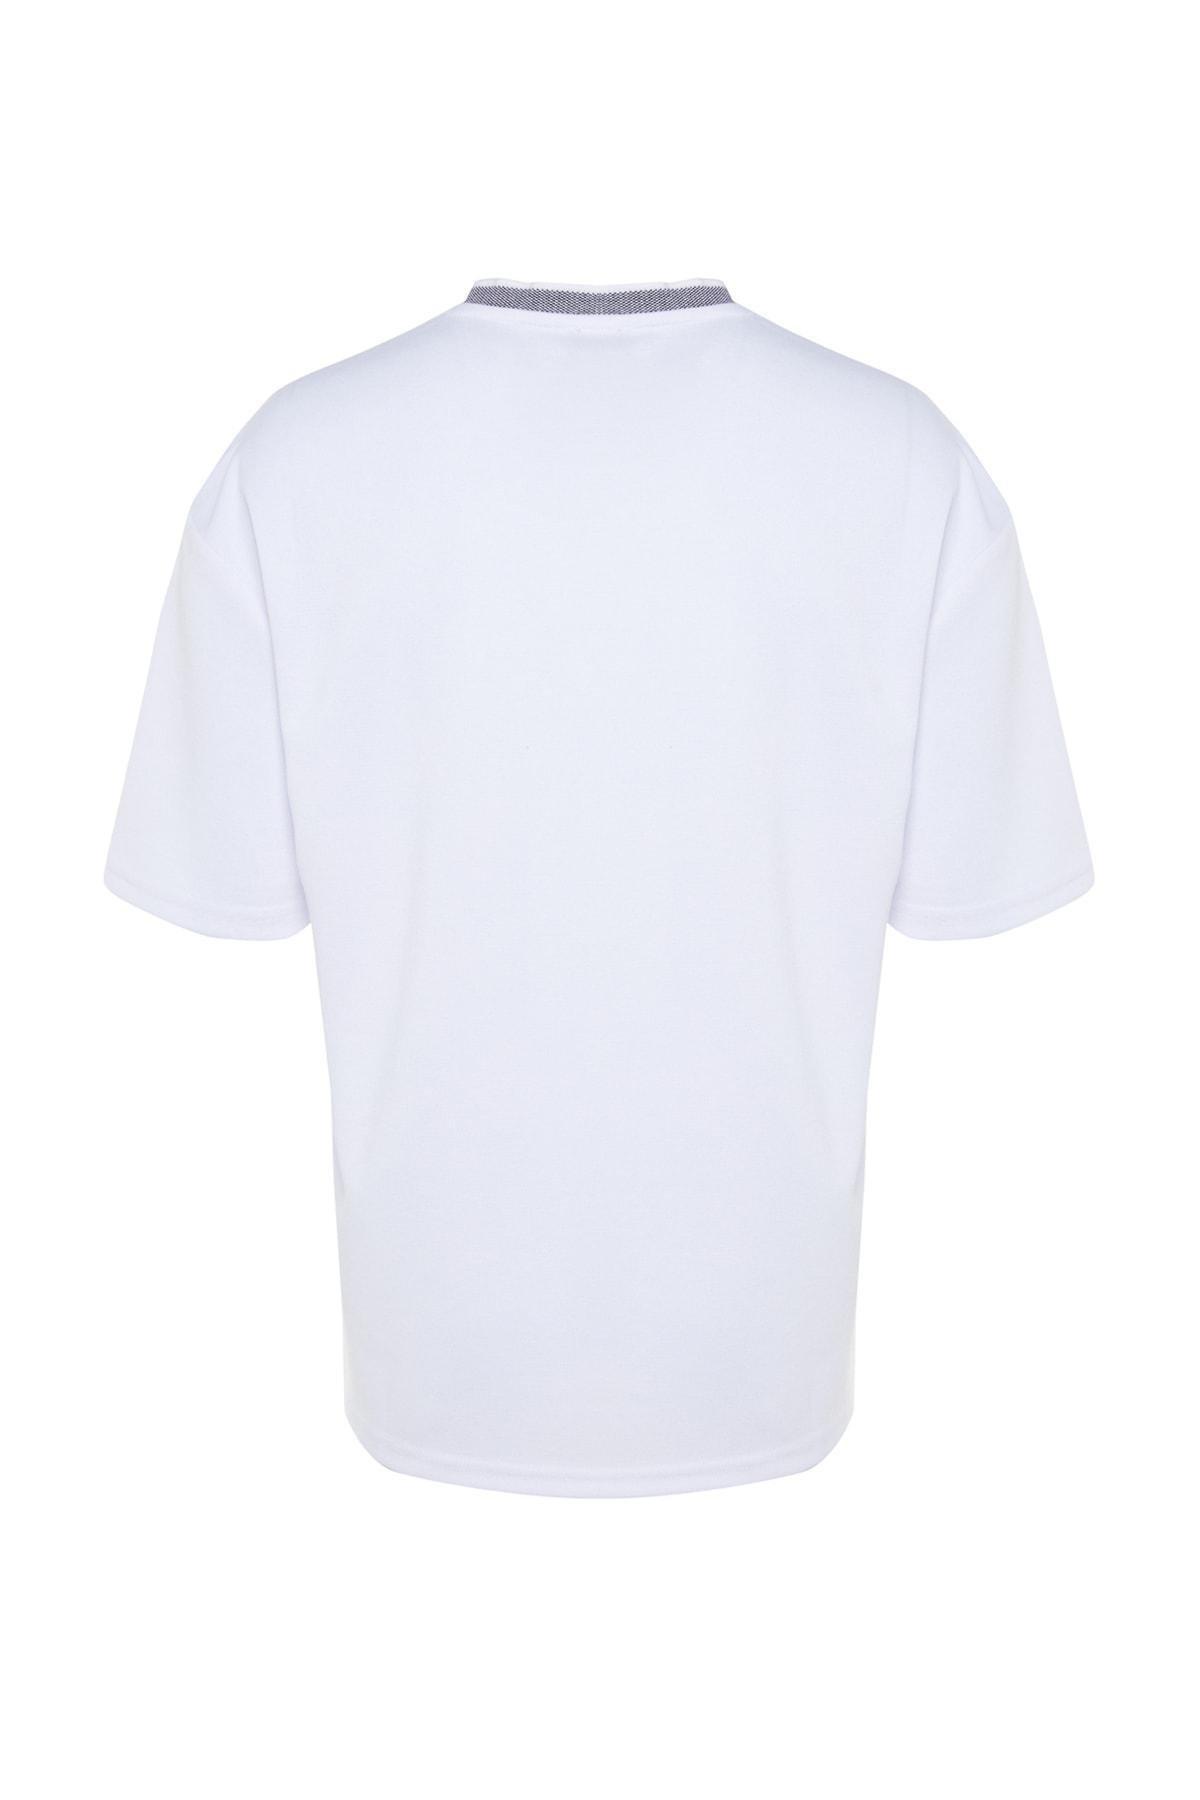 Trendyol - White Relaxed T-Shirt